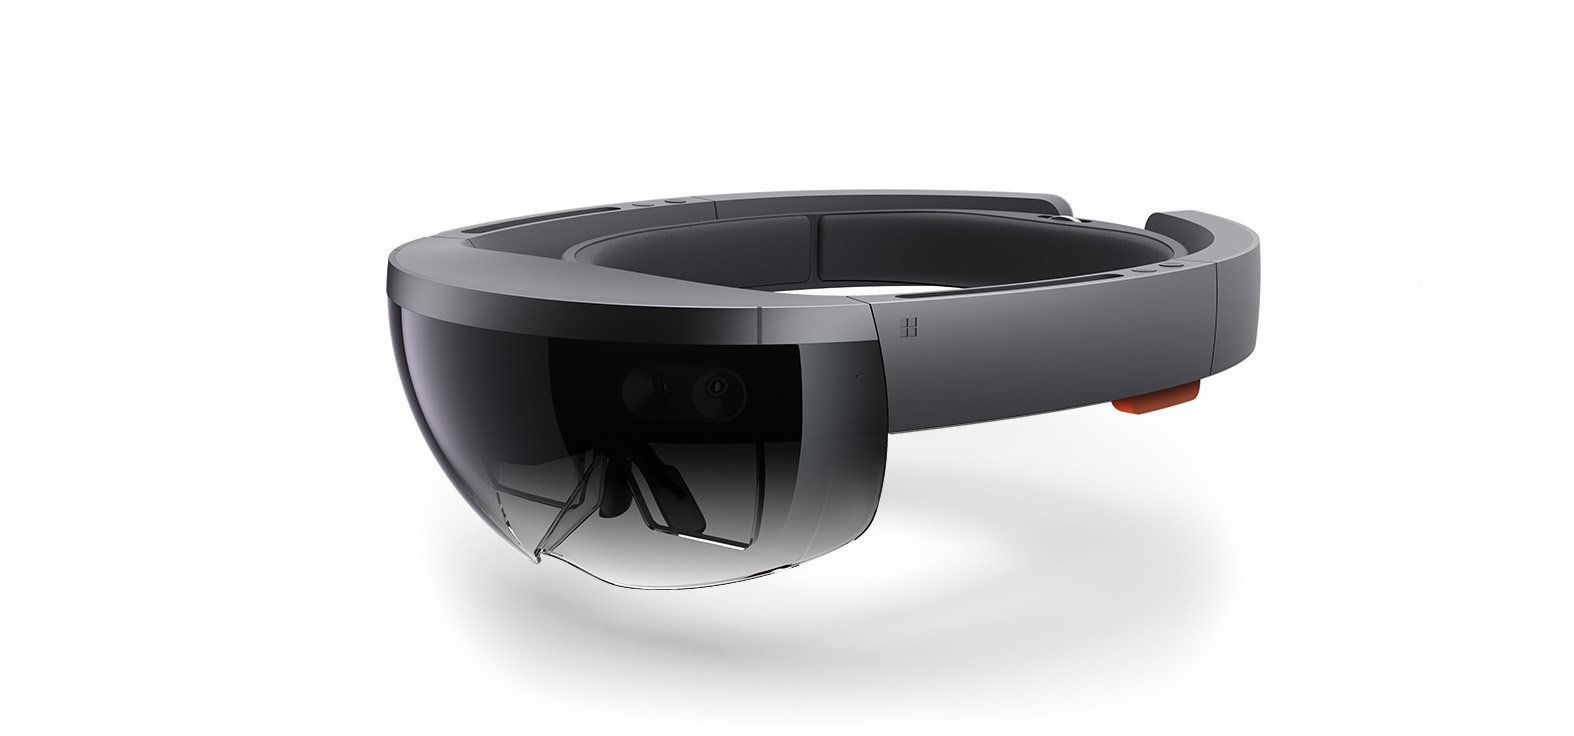 Details zu Microsoft-betriebenen VR-Brillen kommen im Dezember - Bild 1